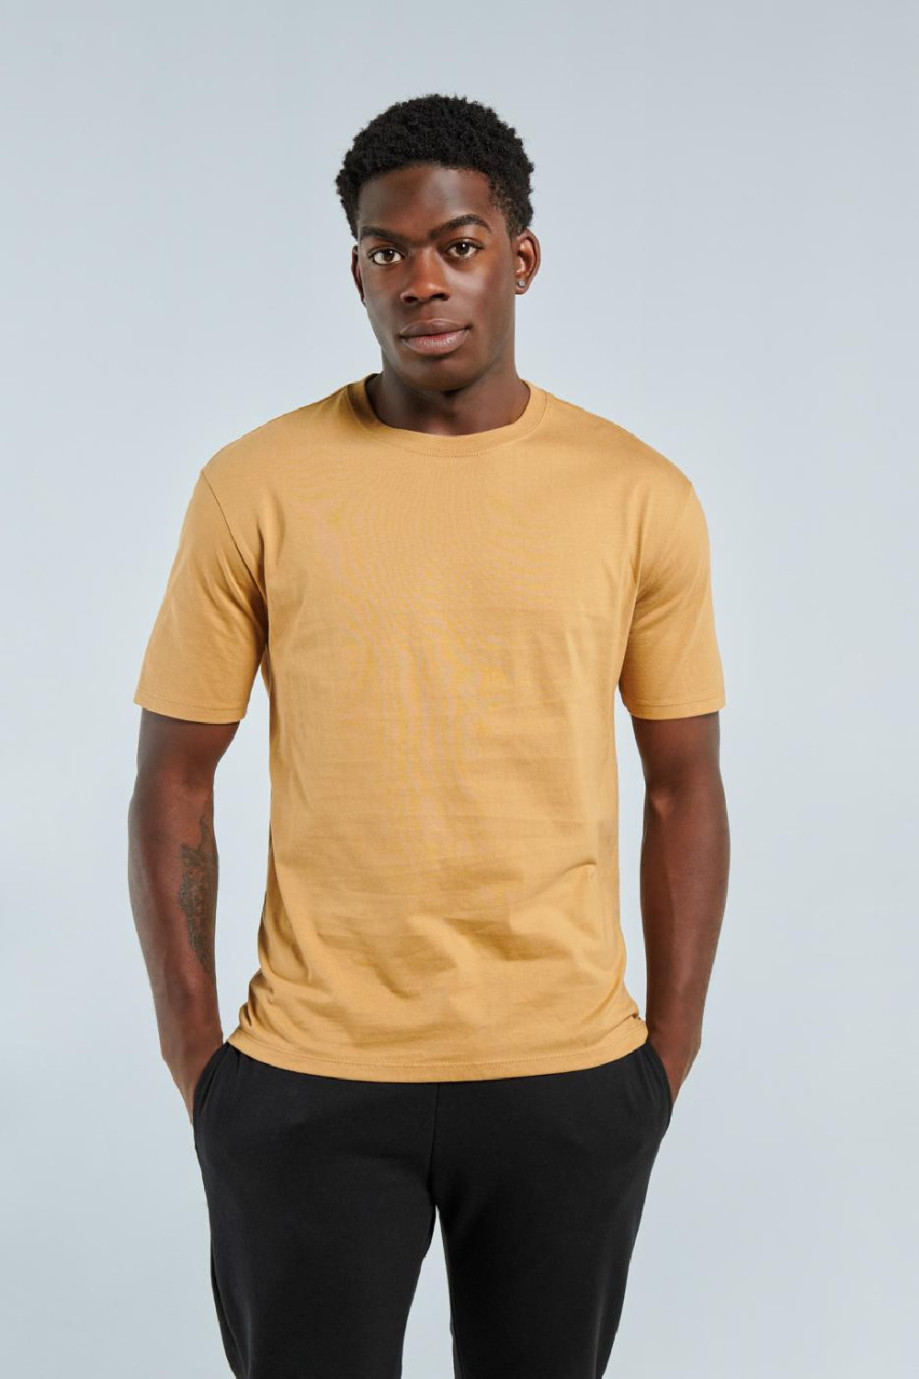 Camiseta en algodón unicolor con manga corta y cuello redondo